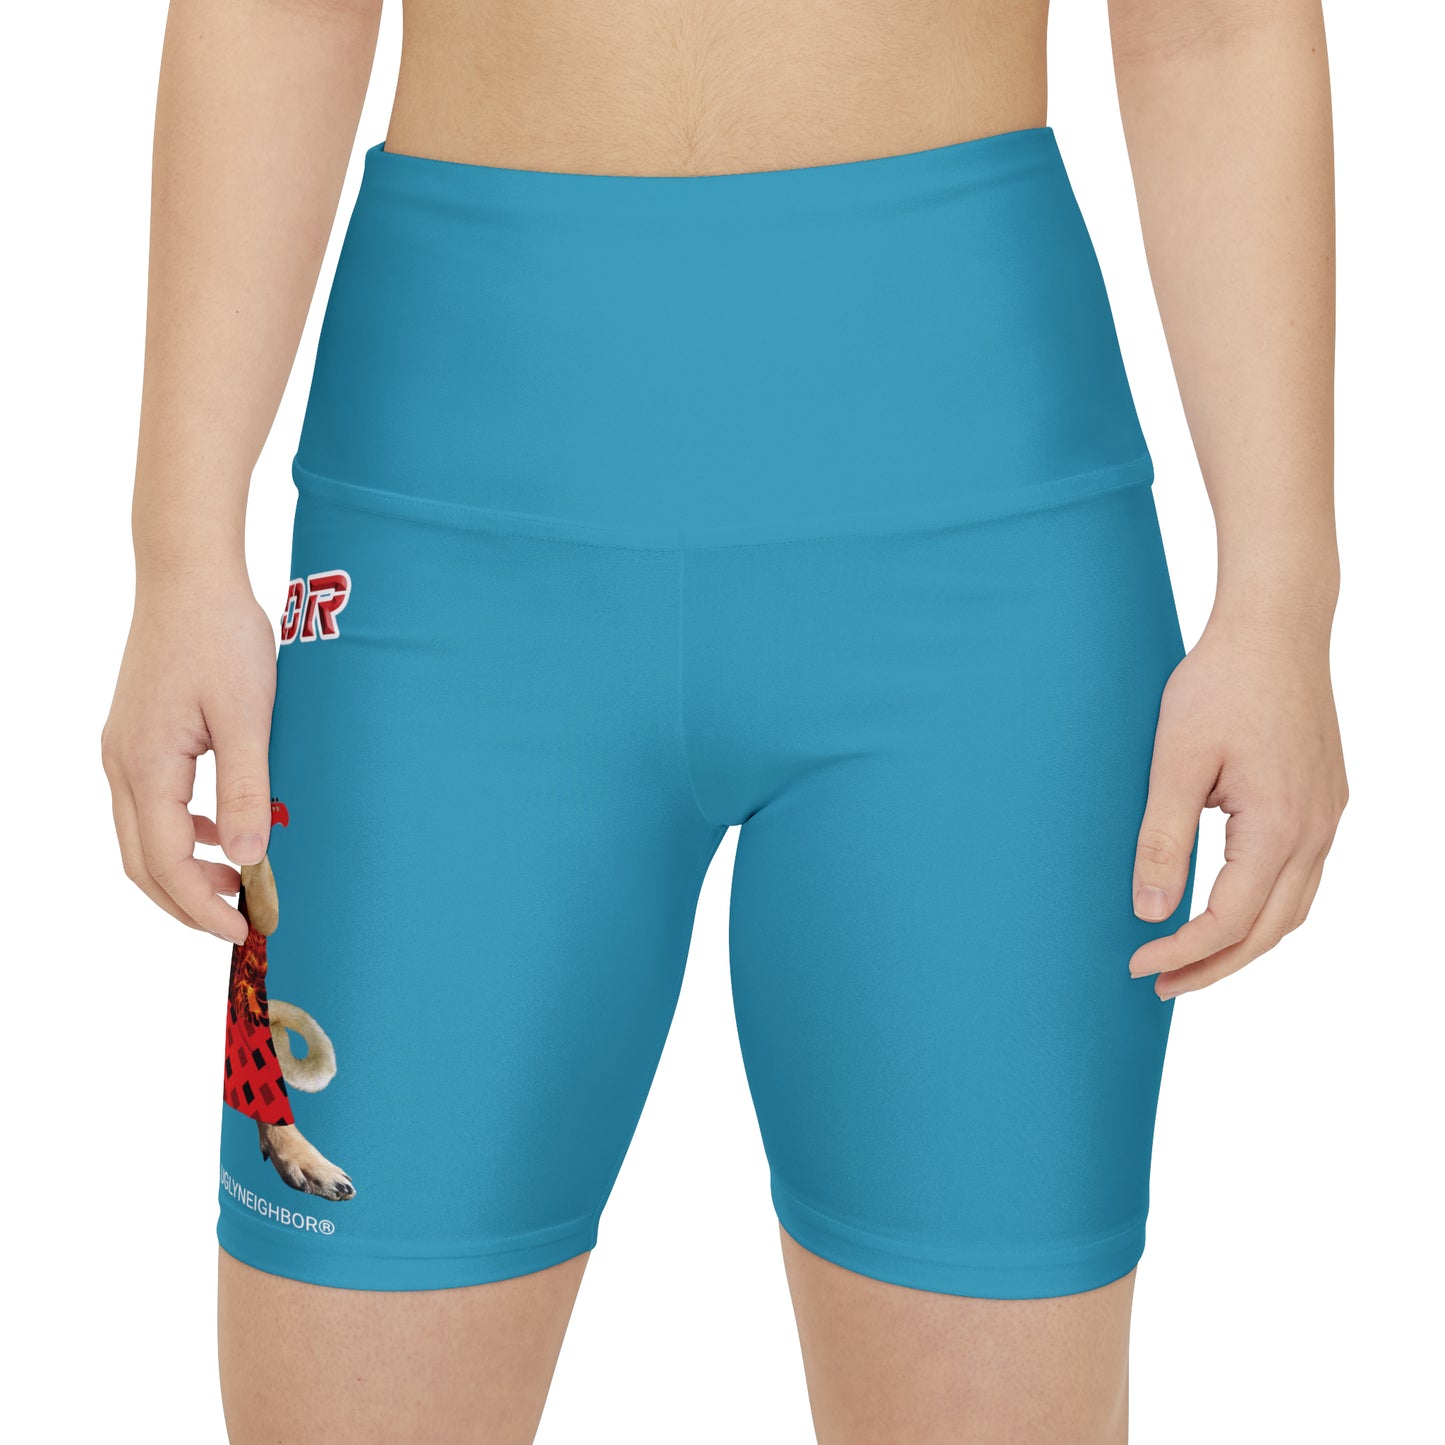 Ugly Neighbor II Women's Workout Shorts - Turquoise